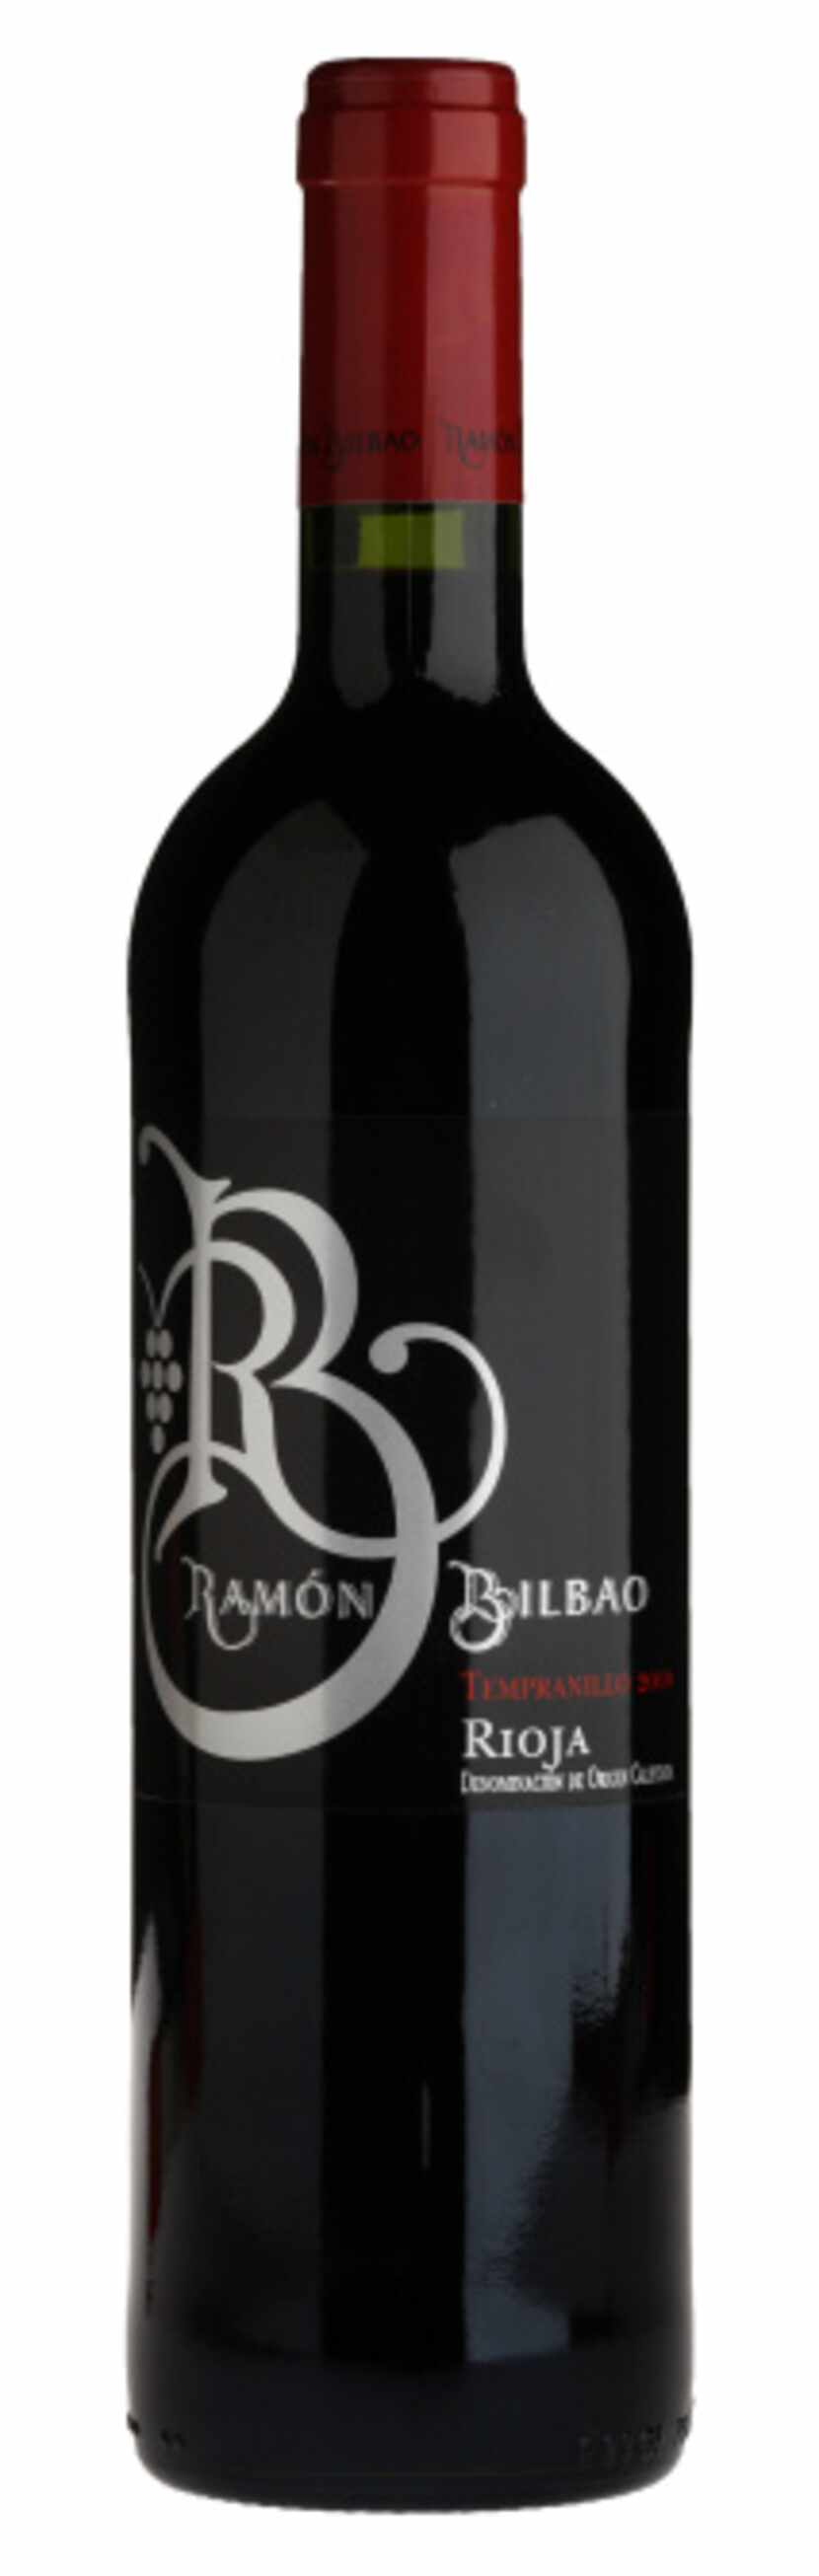 Ramón Bilbao, Rioja DOCa, Crianza, Tempranillo 2010

$10.69-$14.99; Goody Goody, Pogo’s,...